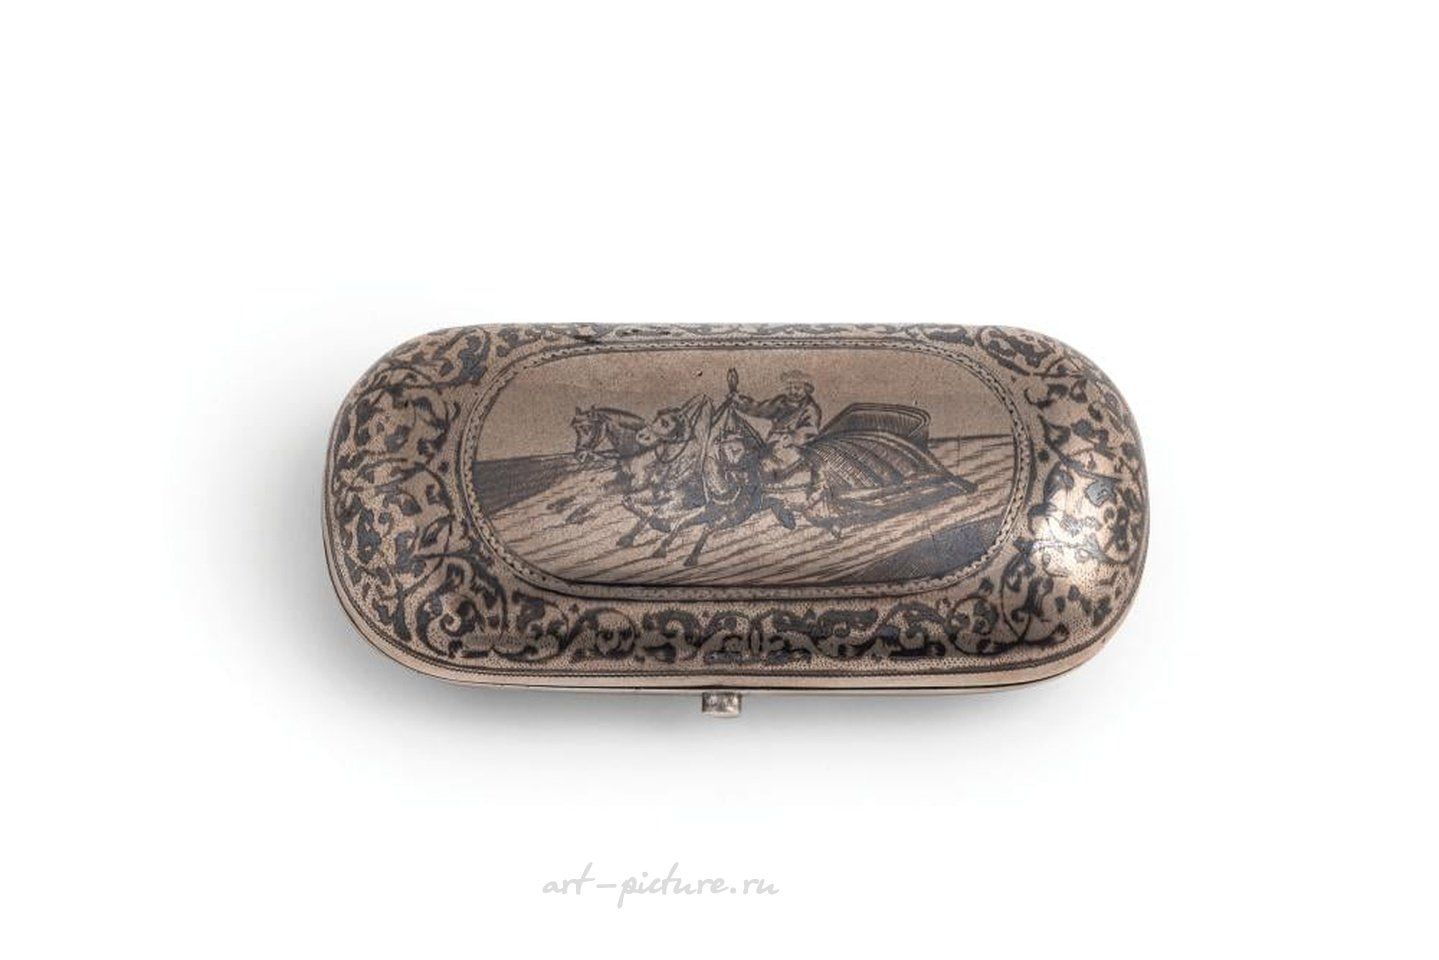 Русское серебро , Серебряный и ниелловый сигарный кейс, Россия, 19 век